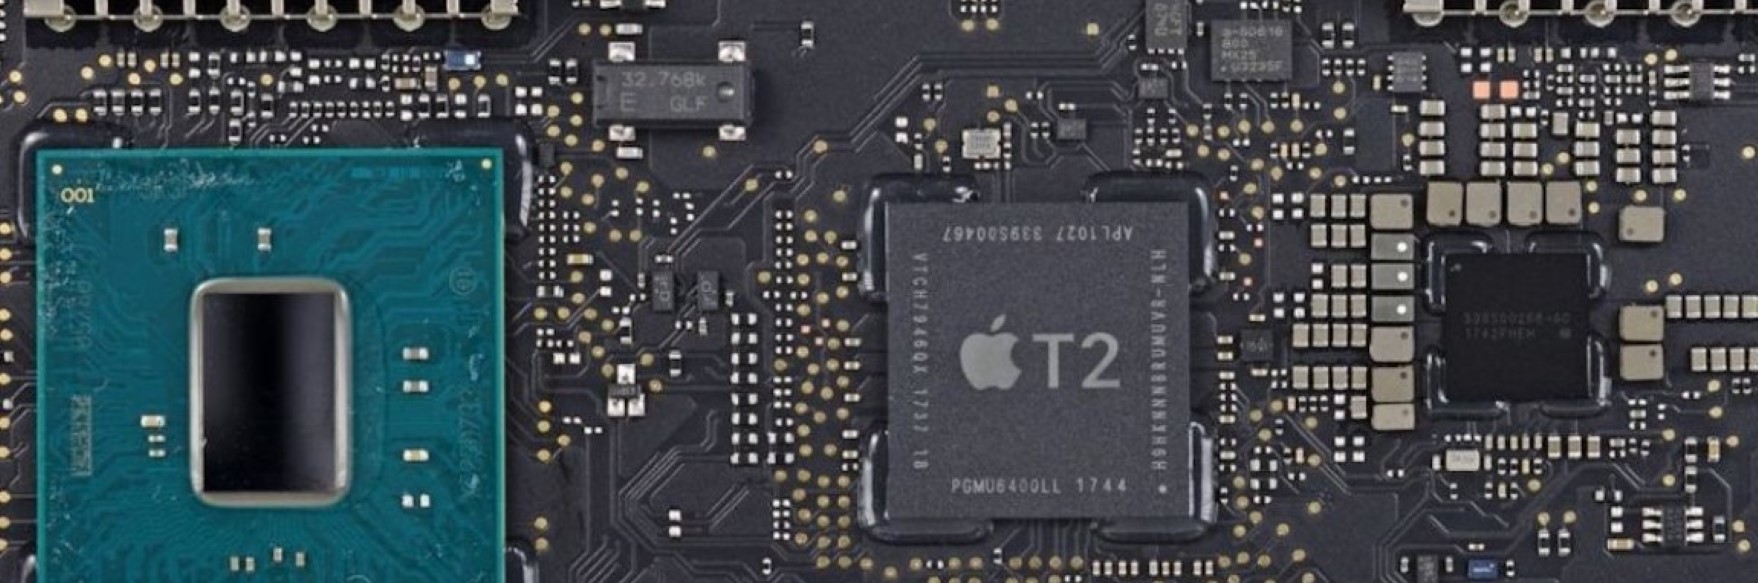 Todo sobre MacBook con Chip T2